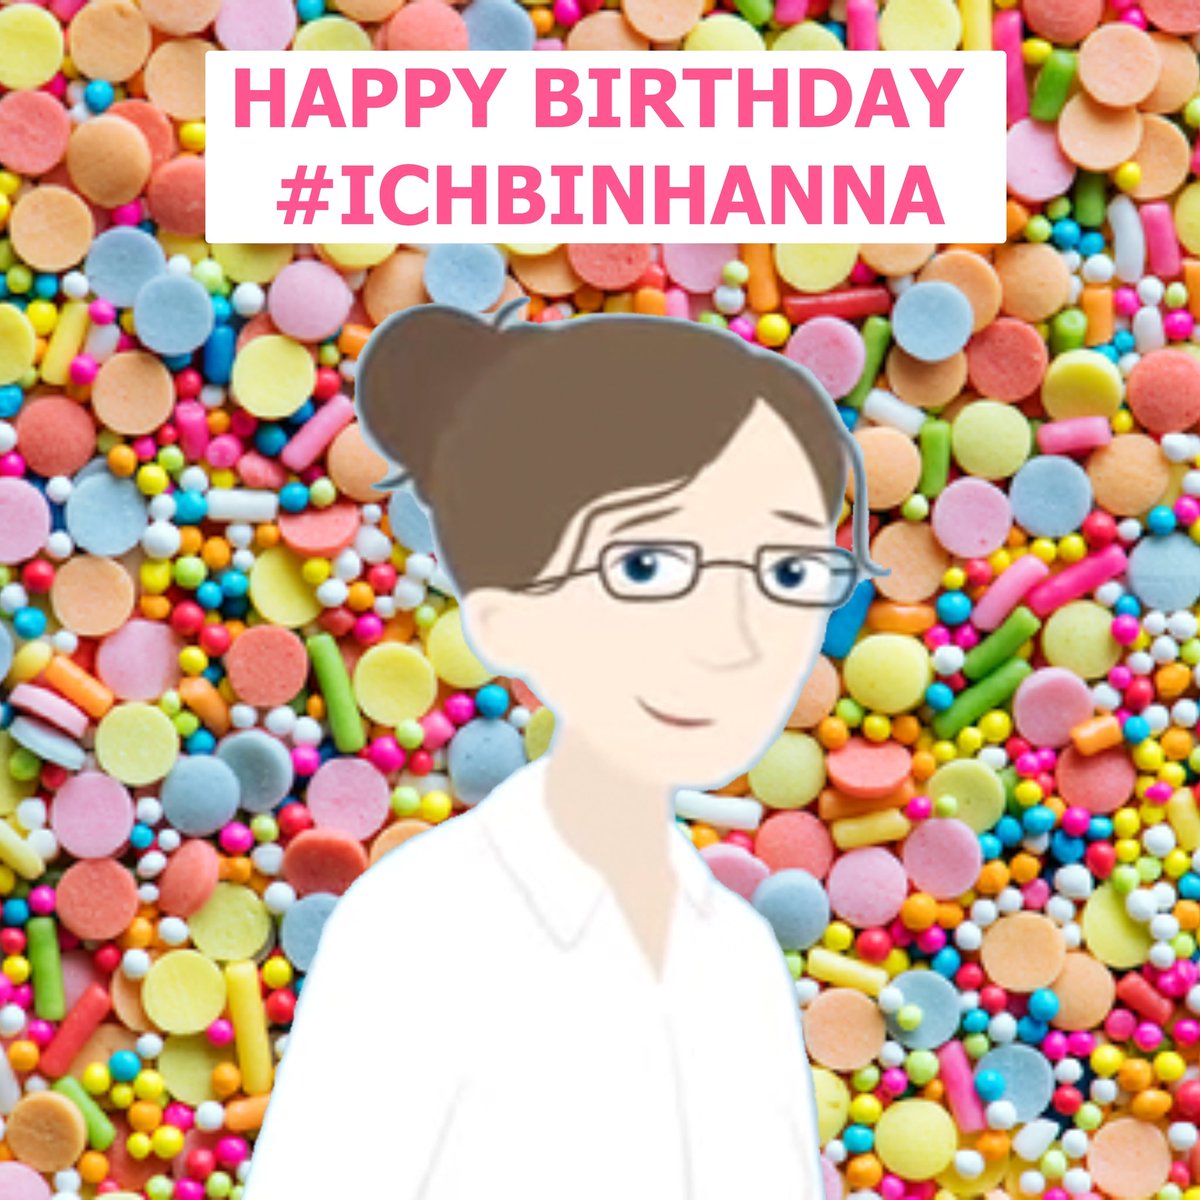 Hanna ist eine fiktive Biologin in einer misslungenen Befristungs-Apologie.
#IchBinHanna ist eine sehr reale Initiative, die seit zwei Jahren mit Erfolg für bessere Arbeitsbedingungen in Forschung & Lehre kämpft, gemeinsam mit #IchBinReyhan, #IchBinTina, #ProfsFürHanna & Co.
1/2